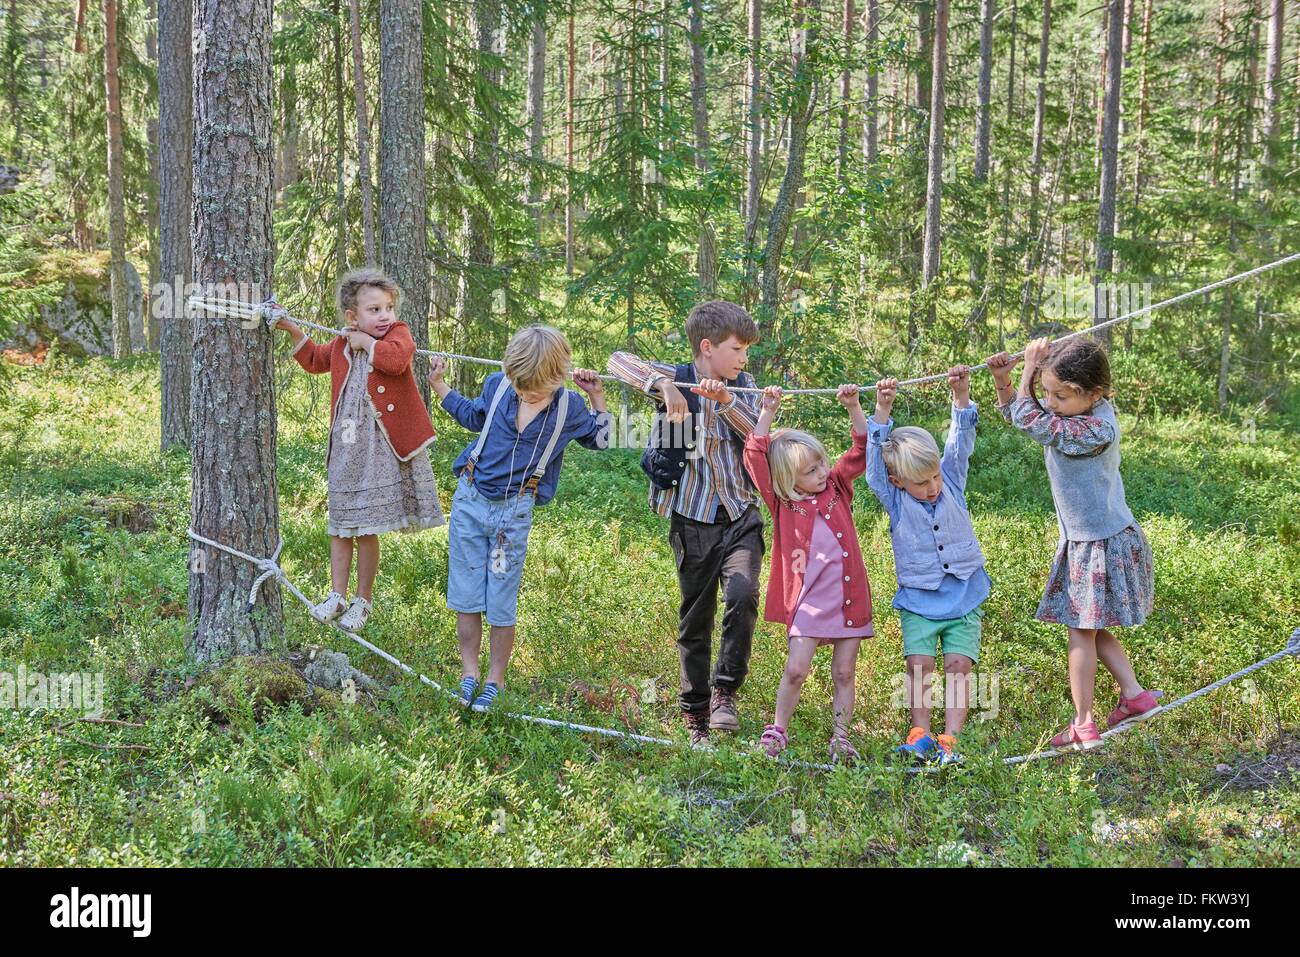 Filles et garçons en sous-vêtements rétro en équilibre sur des cordes en forêt Banque D'Images